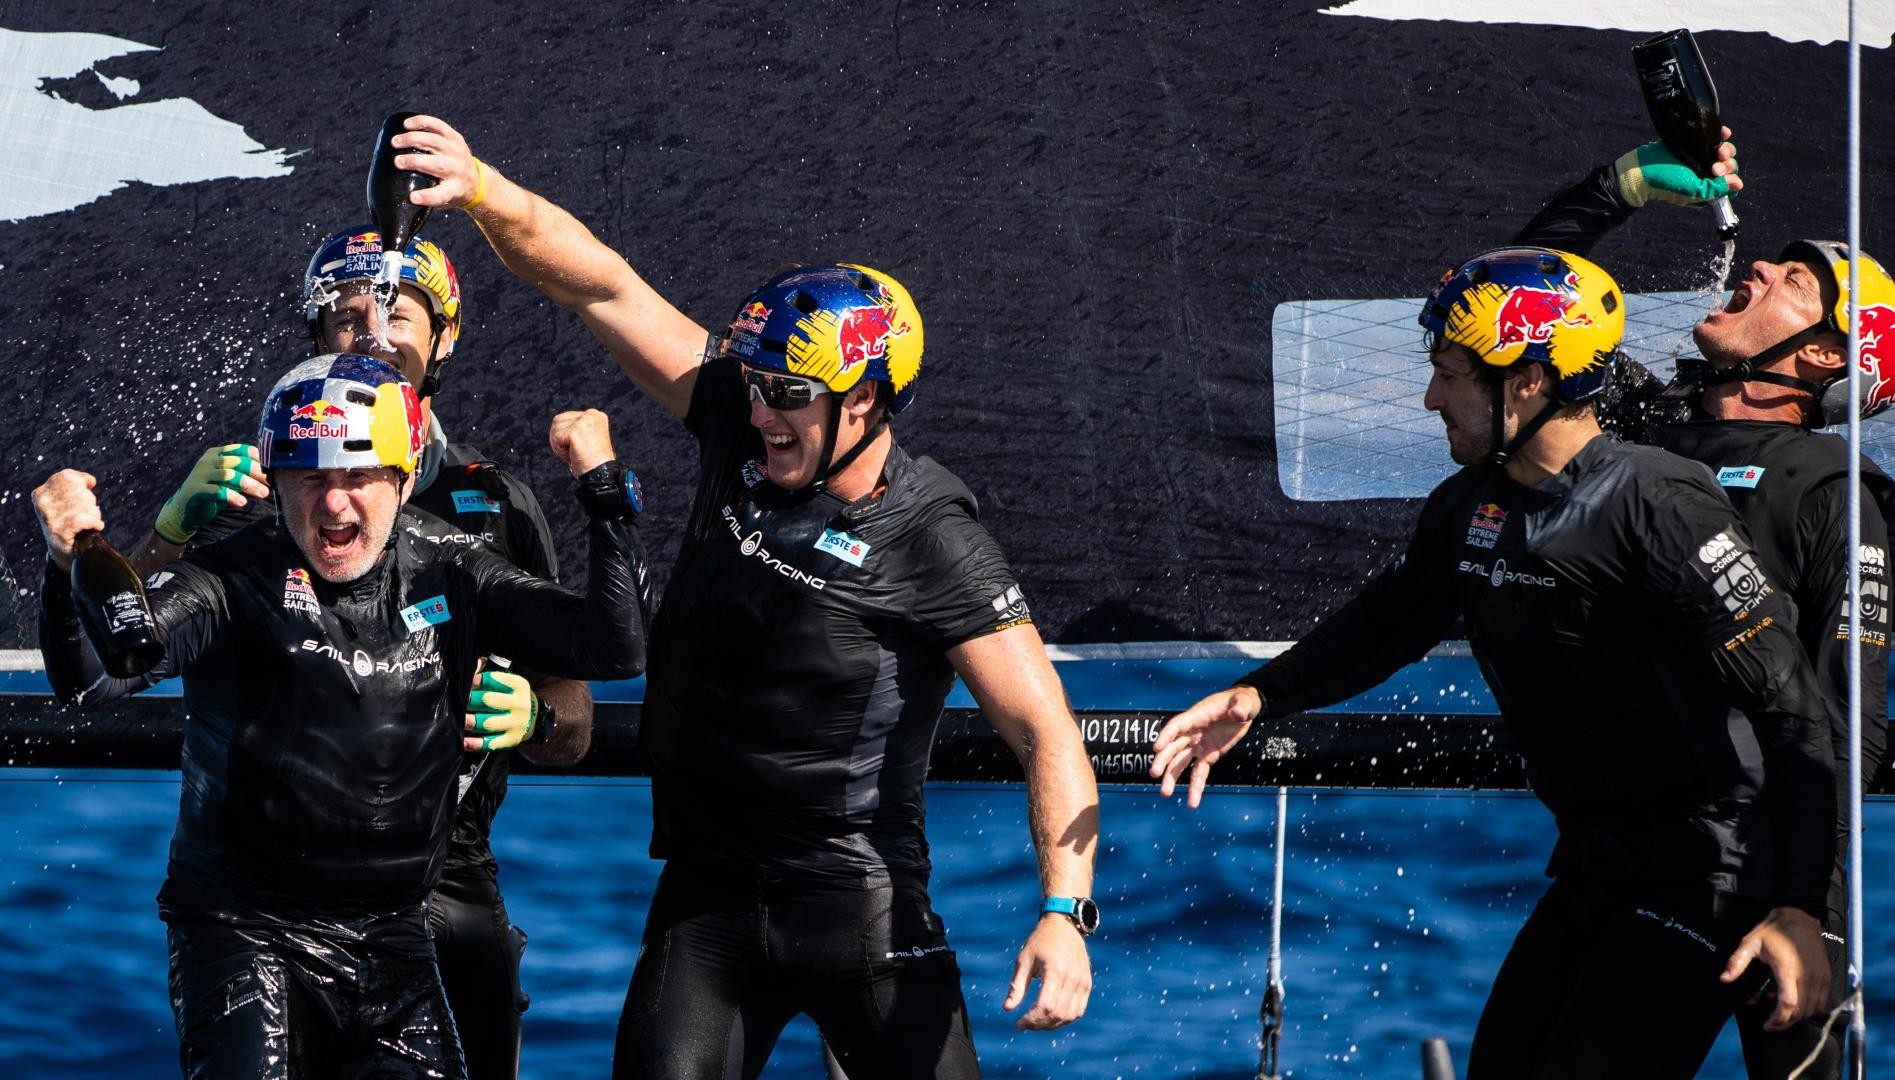 Si festeggia su Red Bull Sailing Team, Hagara e Steinacher tornano a vincere un Mondiale dopo 22 anni. Foto: GC32 Racing Tour / Sailing Energy